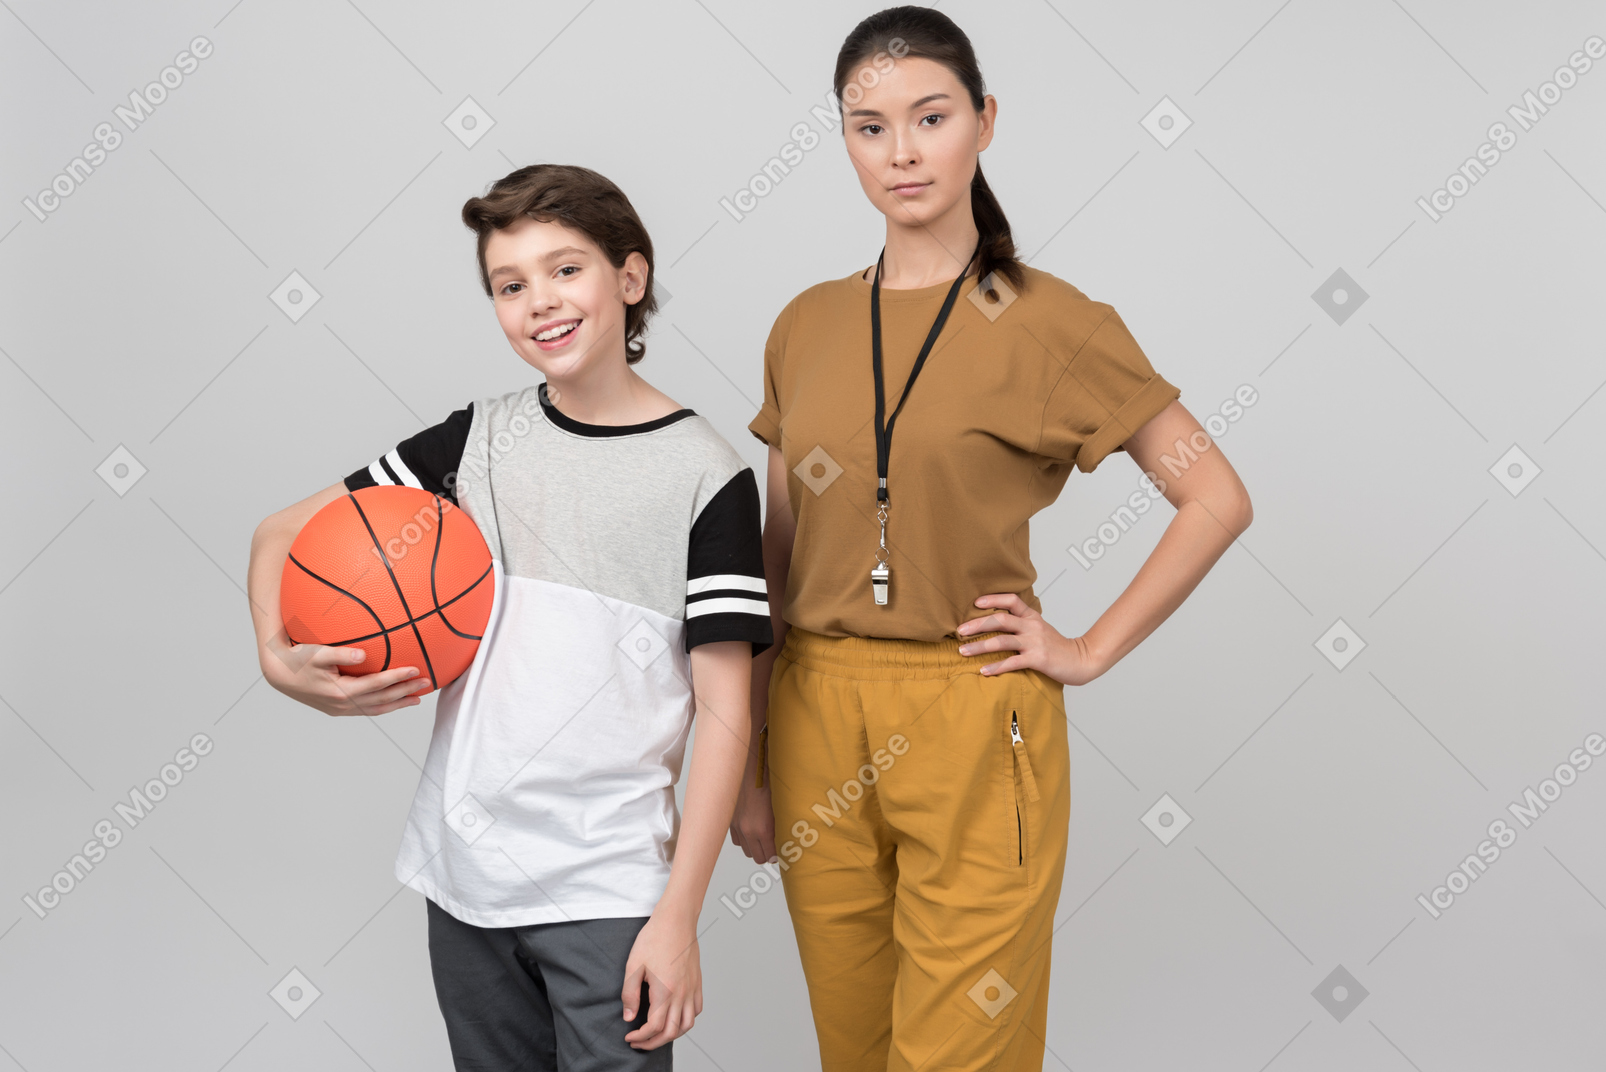 Pe lehrer und ihre schülerin halten einen basketballball